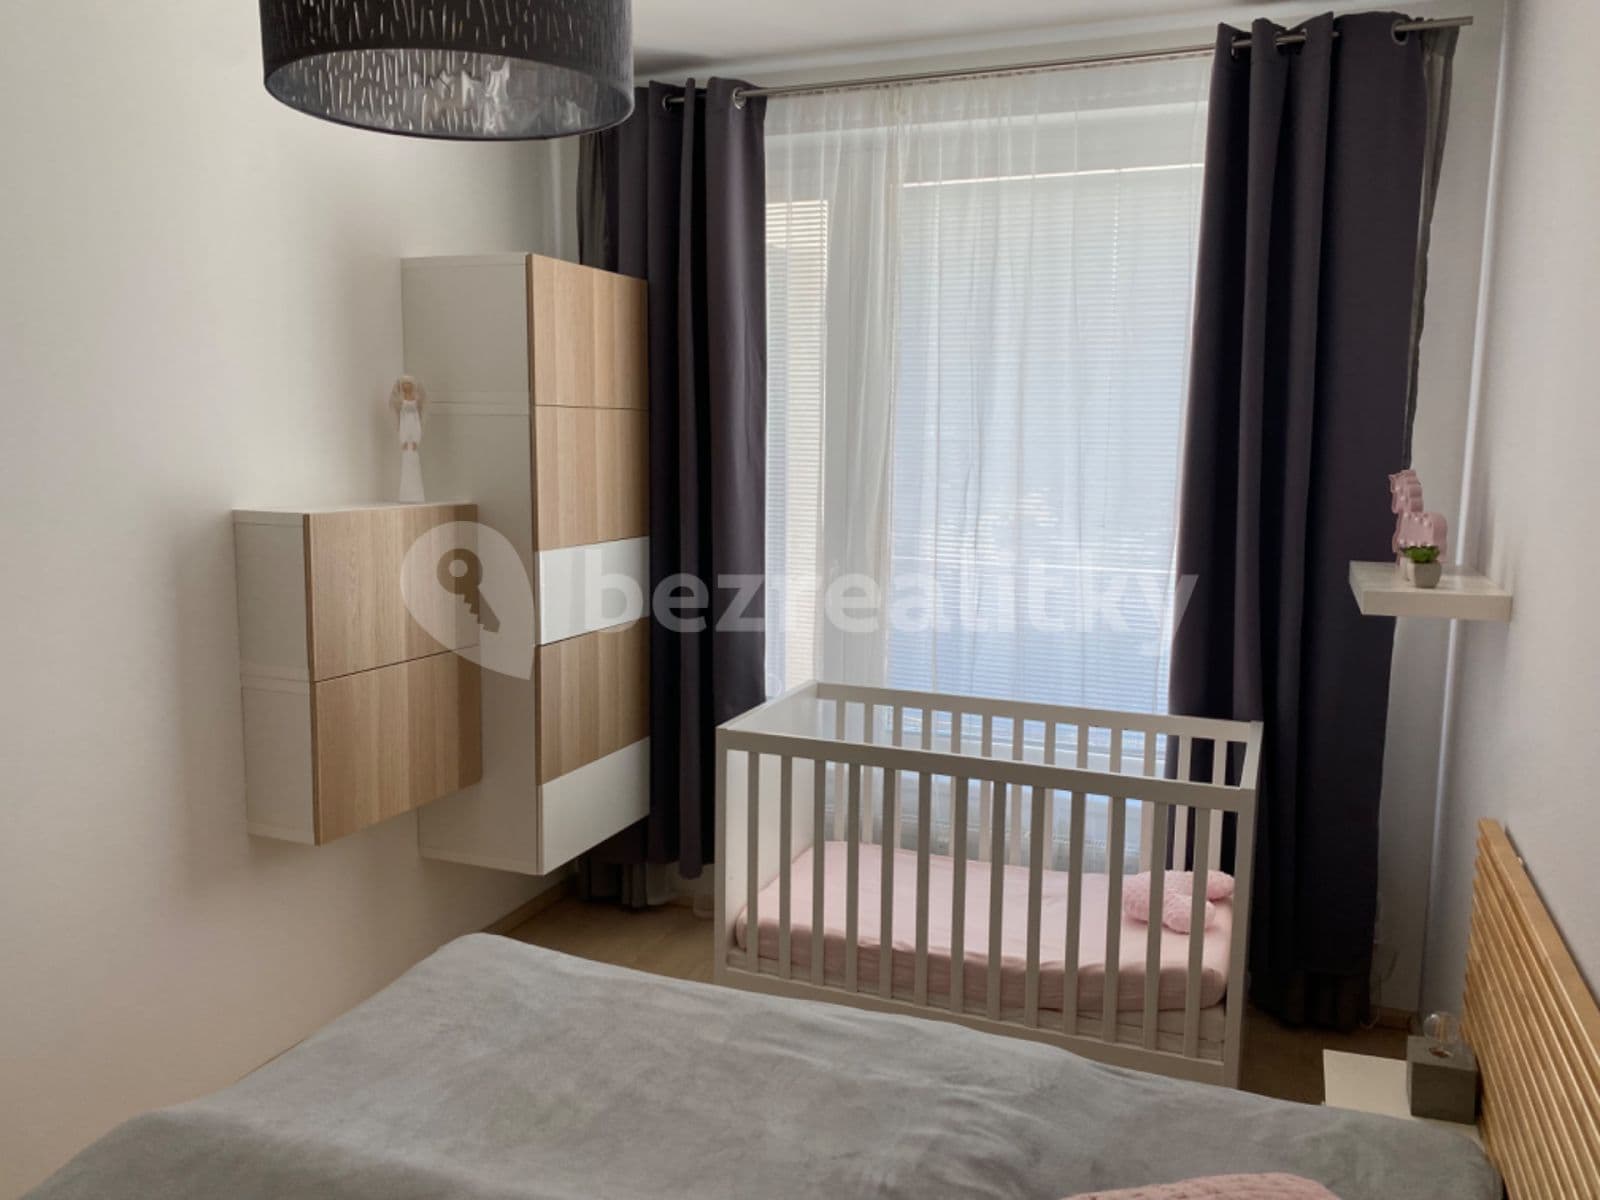 1 bedroom with open-plan kitchen flat to rent, 52 m², Zakšínská, Prague, Prague